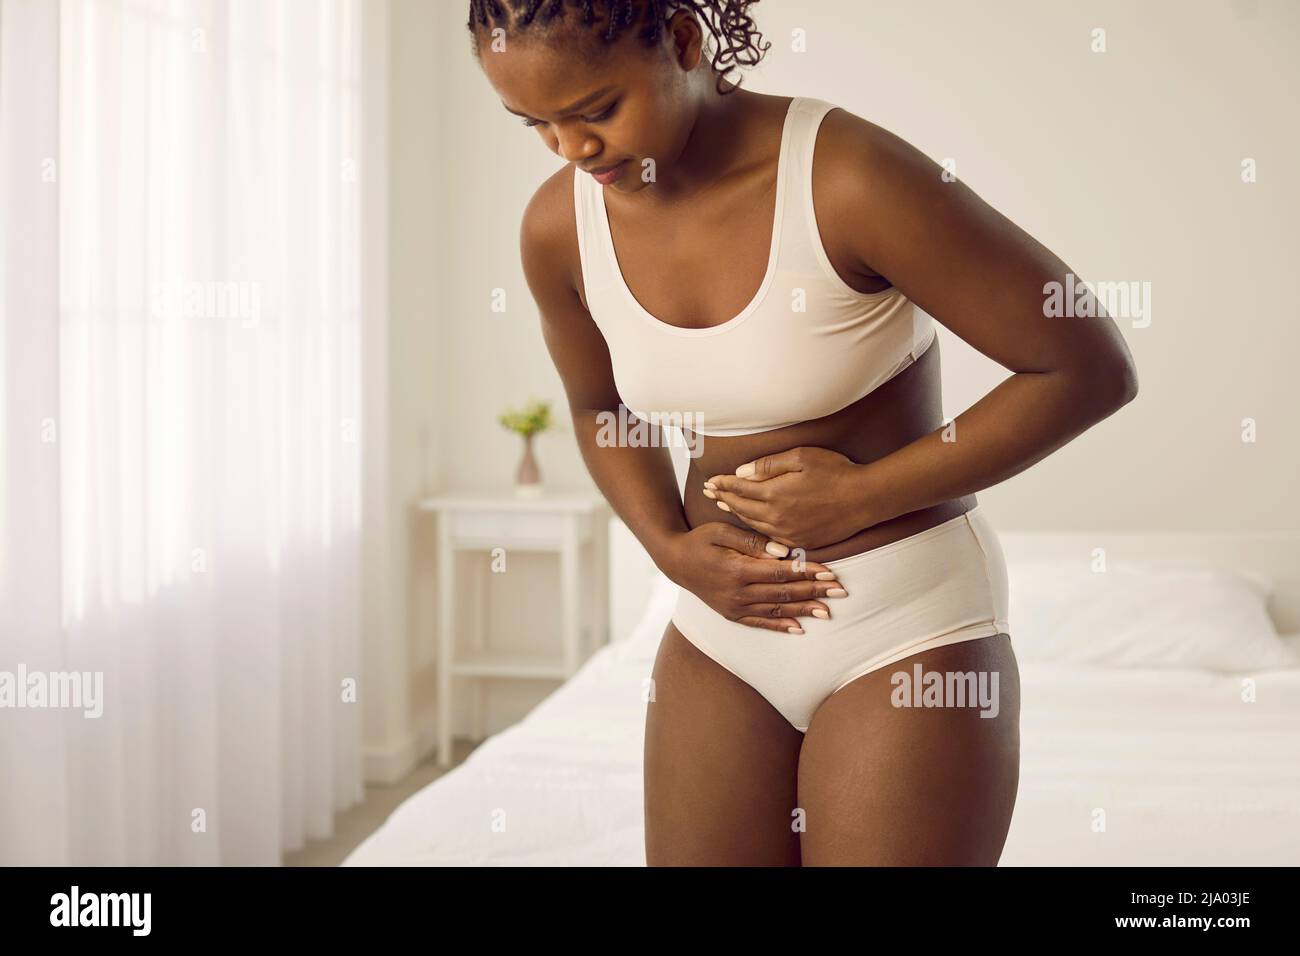 La mujer que tiene dolor de estómago, diarrea o cólicos menstruales siente dolor en su vientre Foto de stock